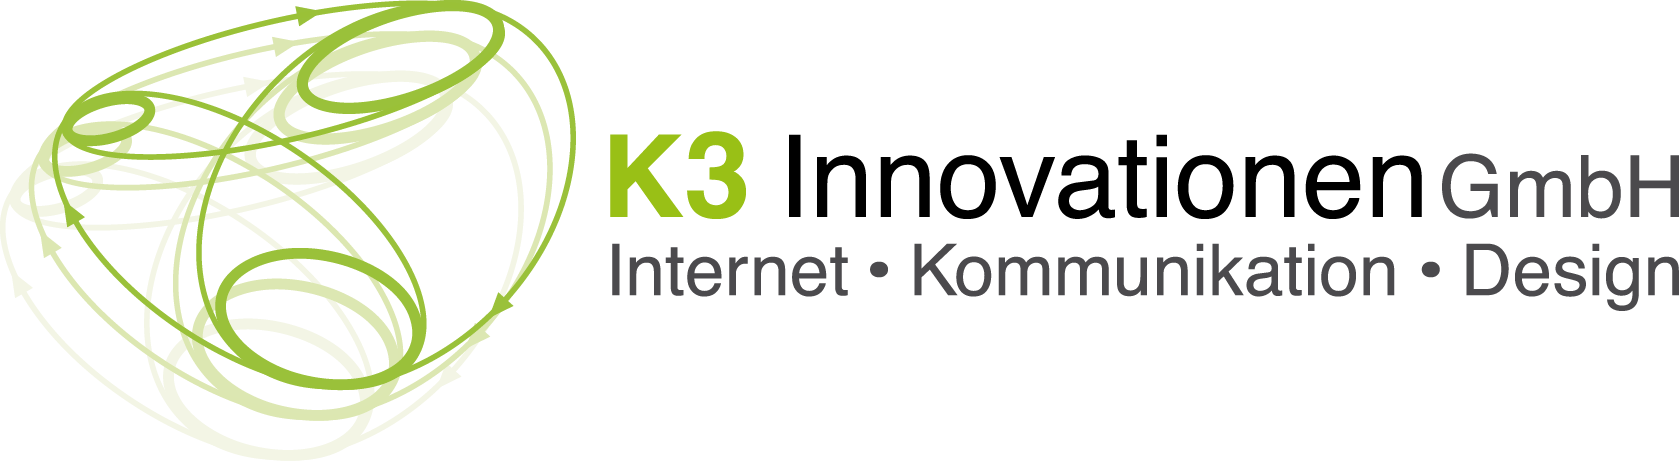 K3 Innovationen GmbH logo